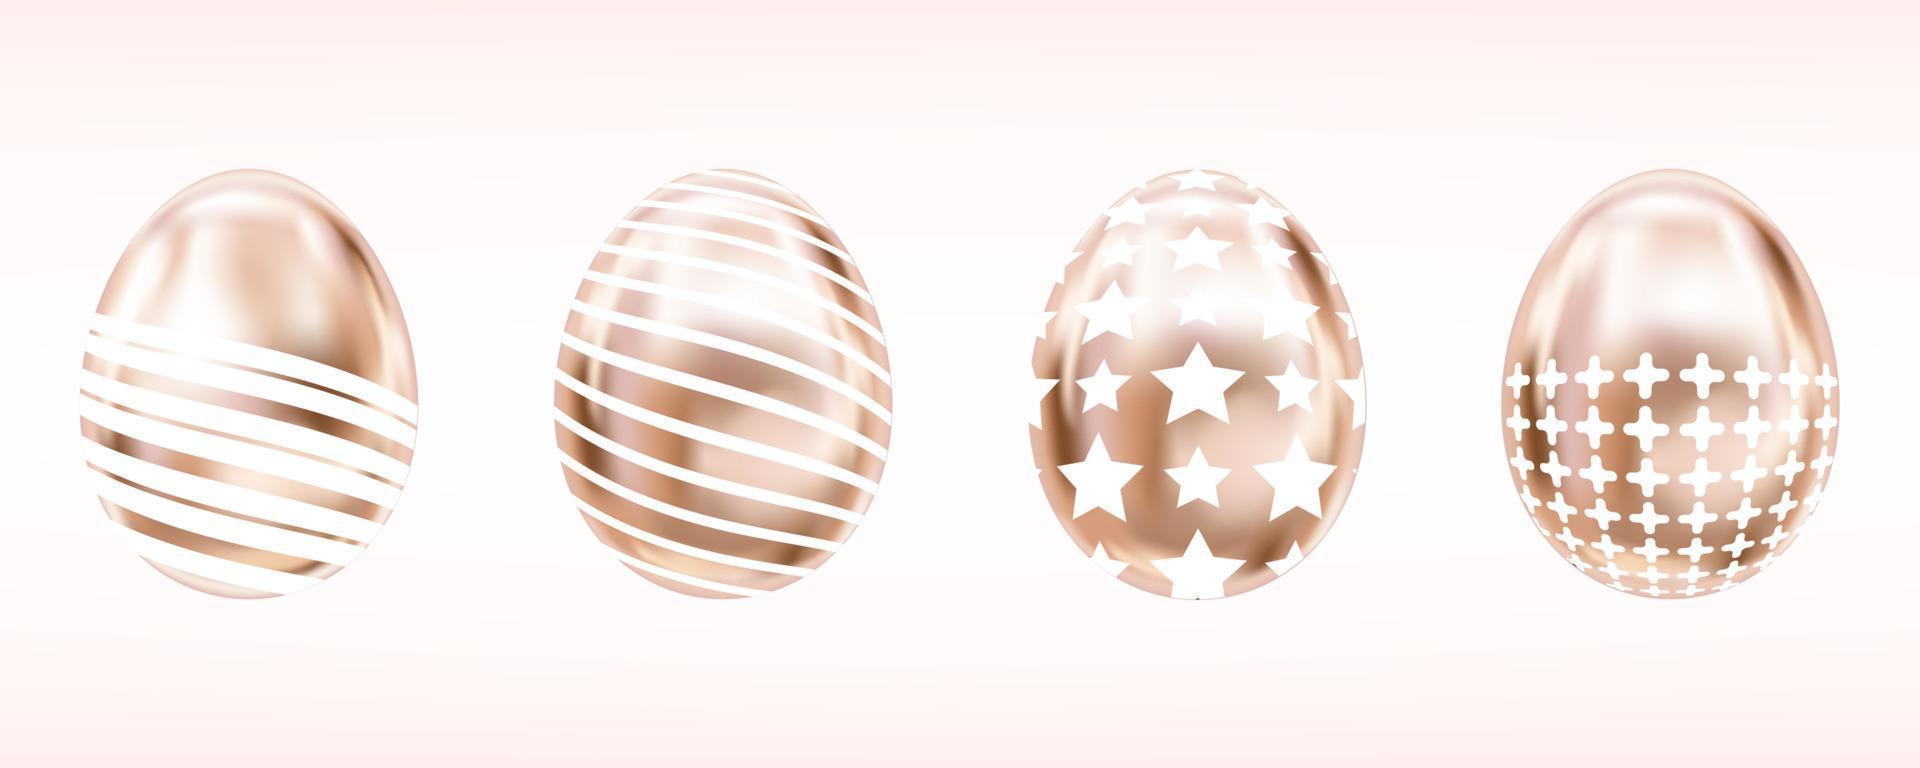 ovos metálicos de quatro relances na cor rosa com estrela branca, cruz e listras. objetos isolados para decoração de páscoa vetor